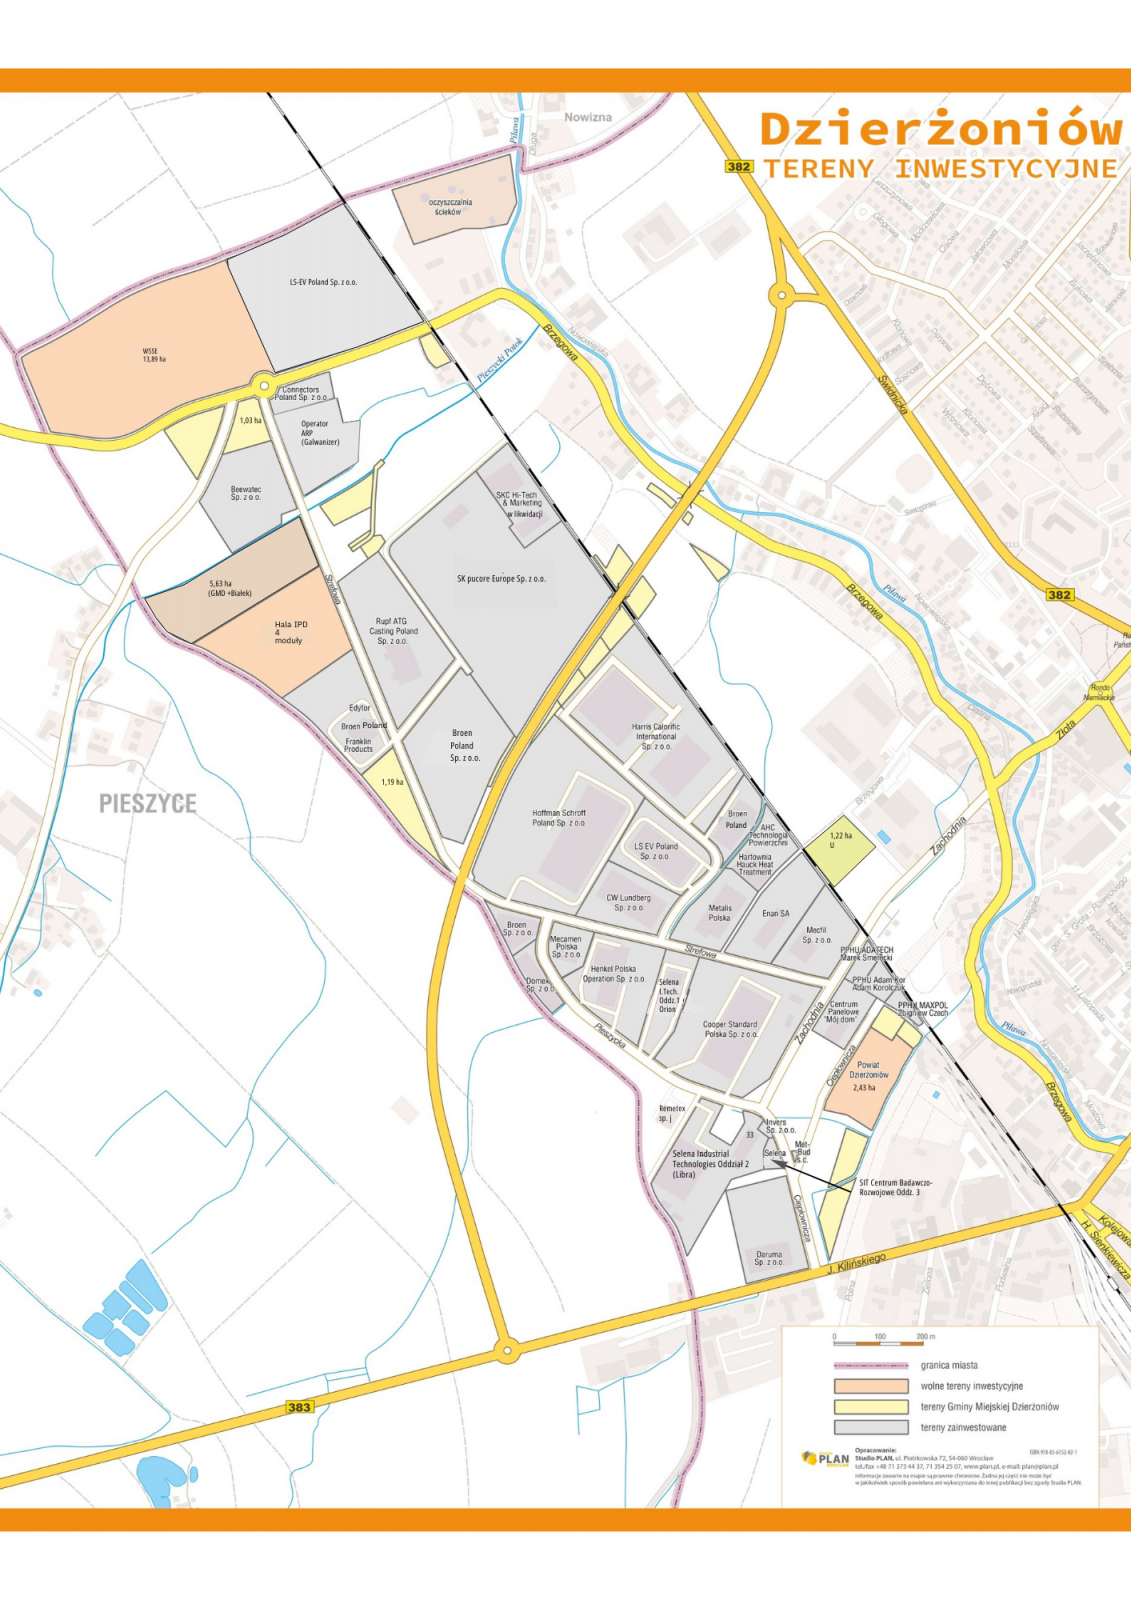  Mapa Wałbrzyskiej Specjalnej Strefy Ekonomicznej - Podstrefa Dzierżoniów z zaznaczonymi terenami inwestycyjnymi. Kolor szary - tereny zainwestowane, kolor łososiowy - tereny do zainwestowania, kolor żółty tereny będące własnością Gminy Miejskiej Dzierżoniów, różowa linia oznacza granicę miasta. Mapa Wałbrzyskiej Specjalnej Strefy Ekonomicznej - Podstrefa Dzierżoniów. 